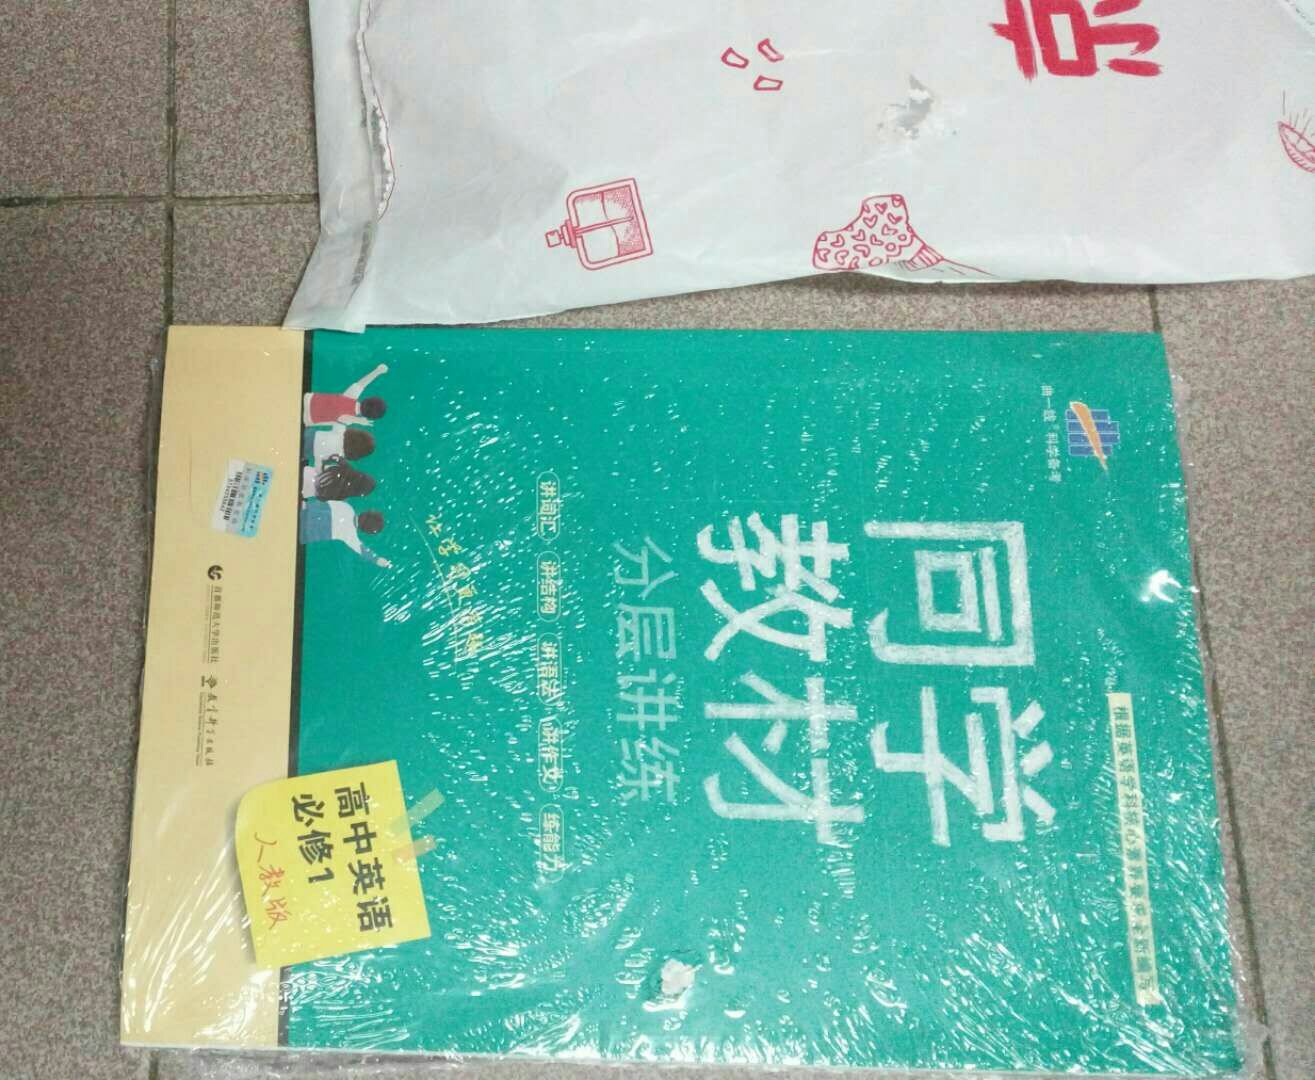 这本书由于包装破损导致书面差不多磨穿了（右边白色处）。